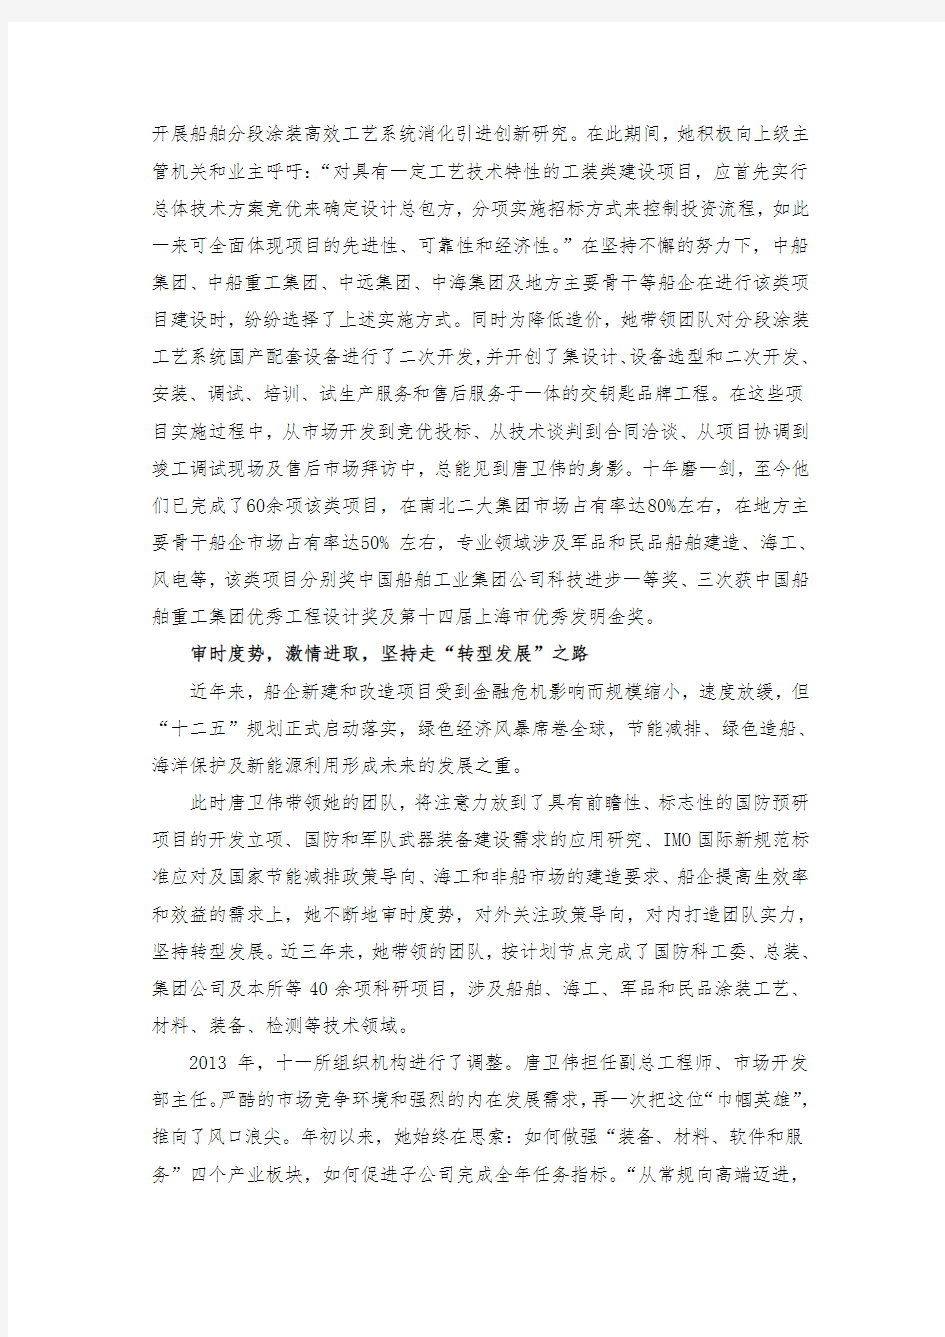 唐卫伟同志简要事迹-中国船舶工业集团公司